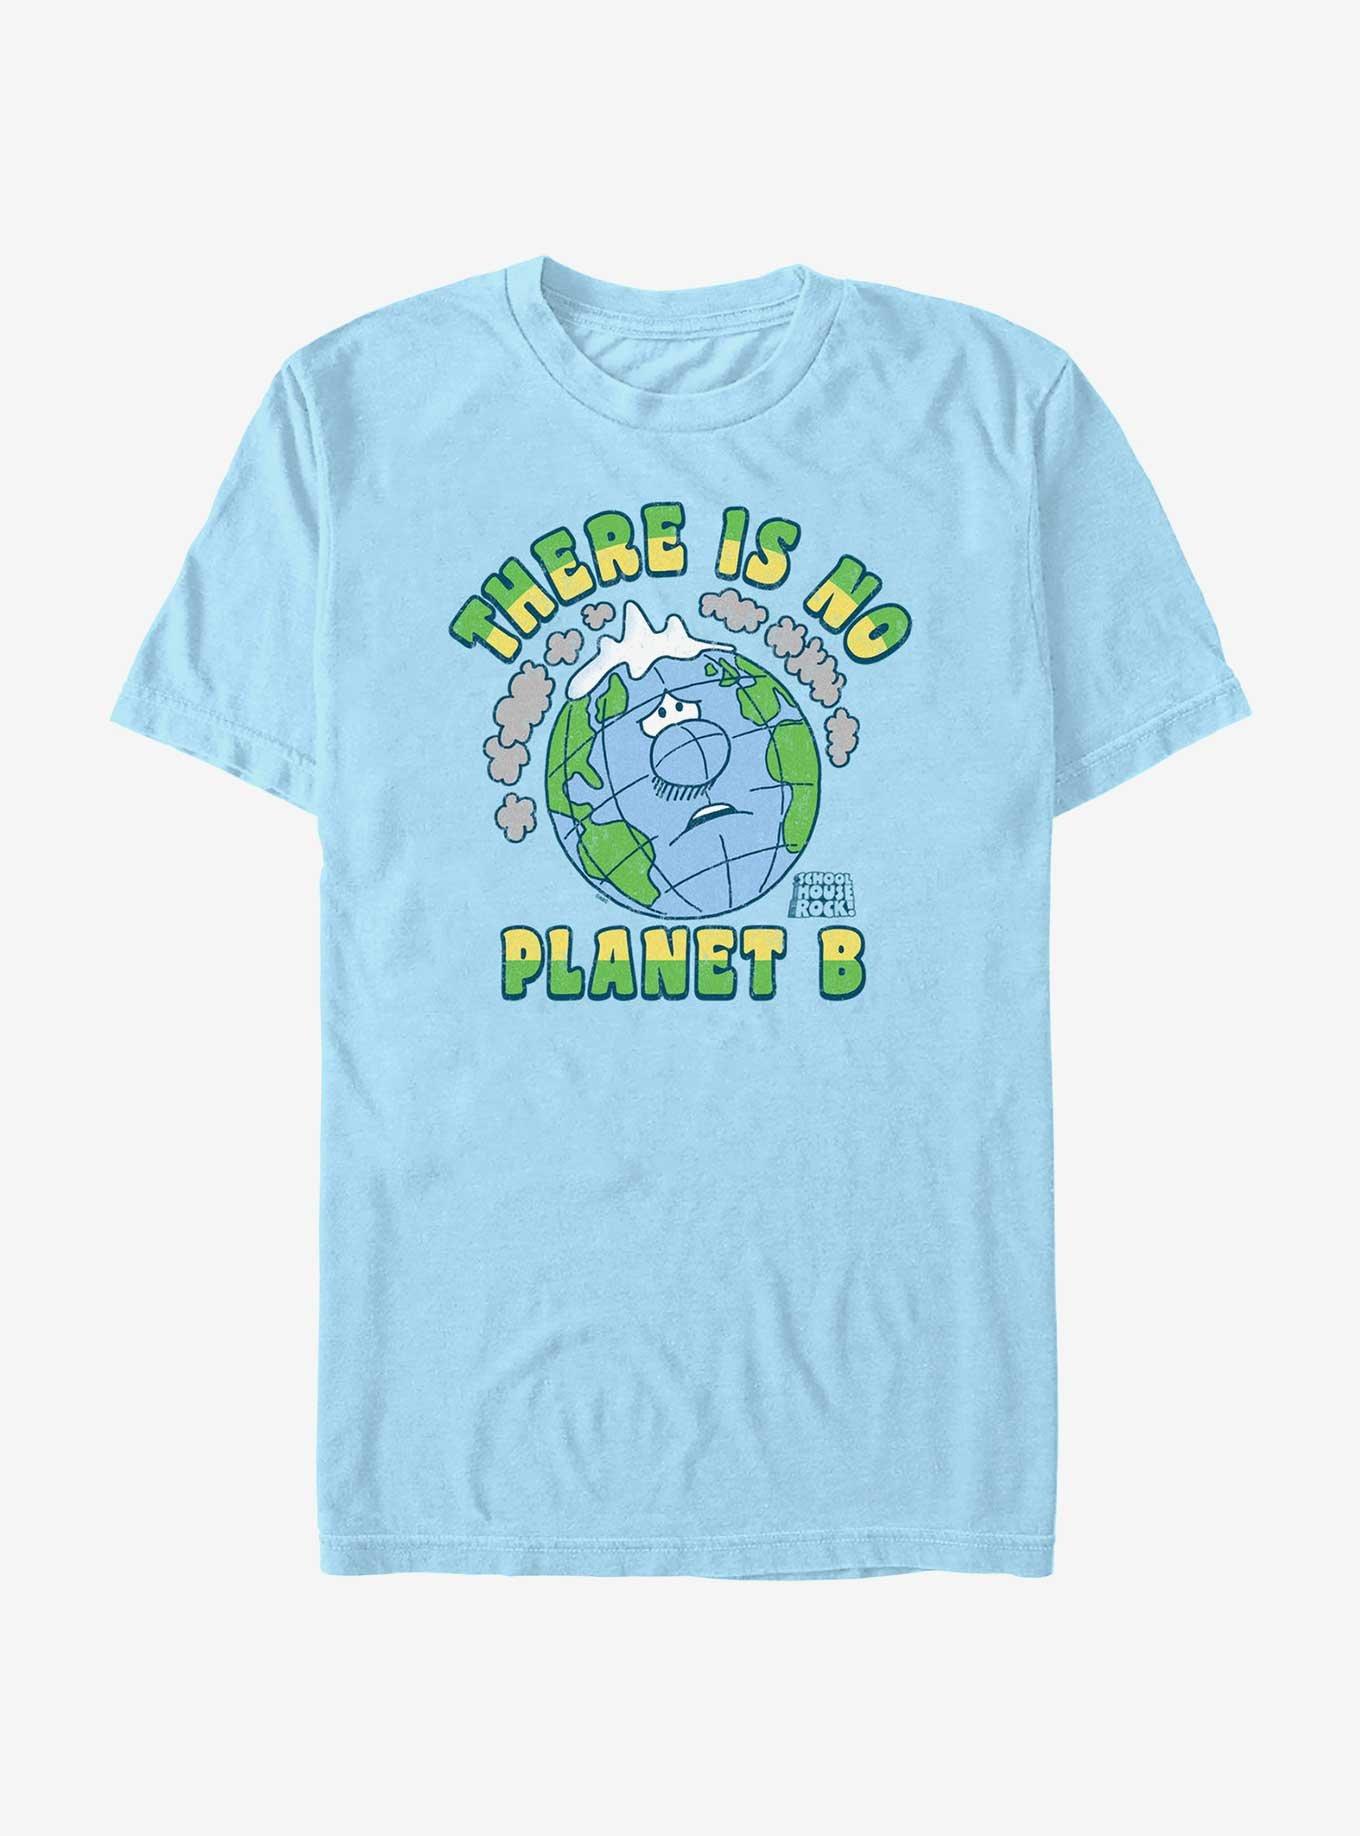 Schoolhouse Rock No Planet B T-Shirt, LT BLUE, hi-res